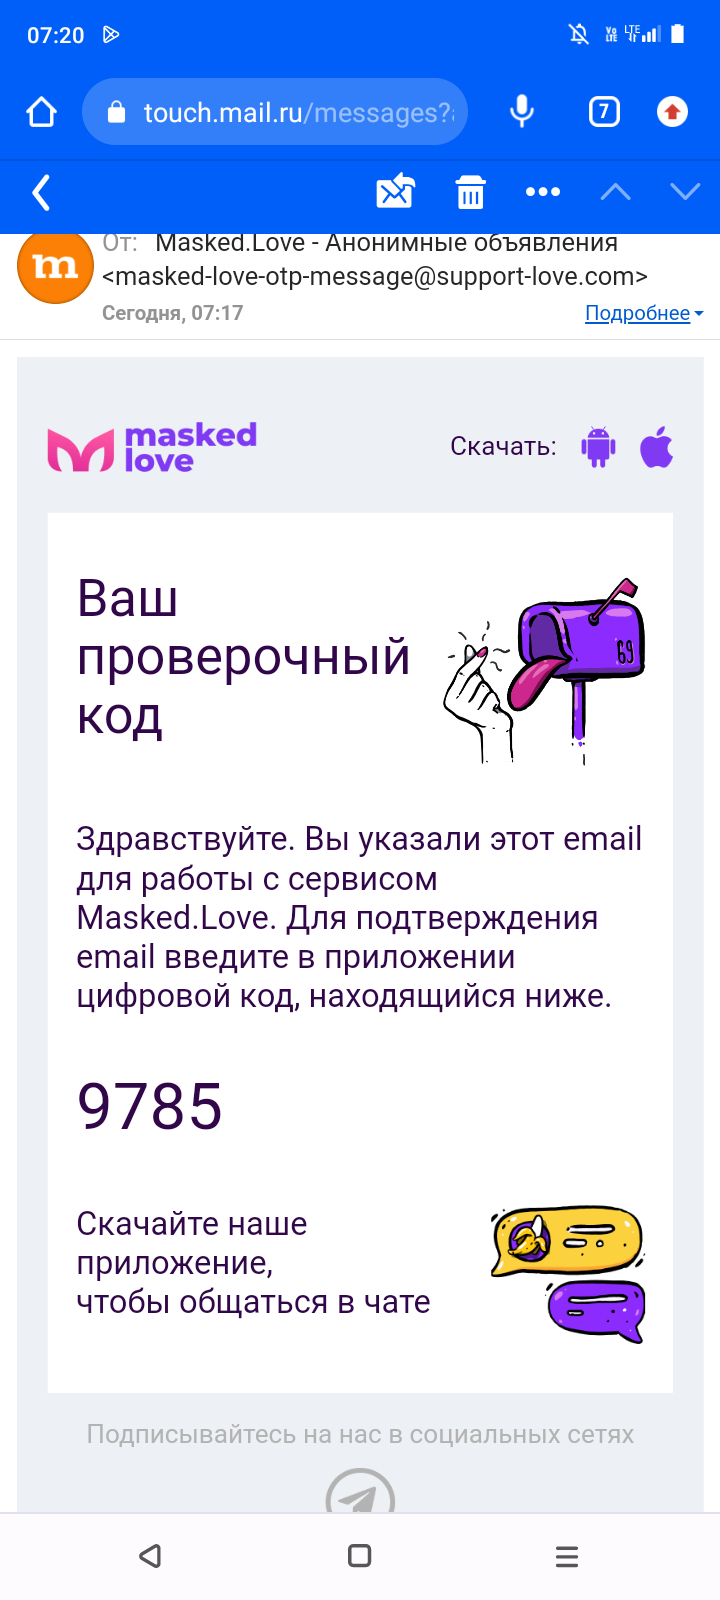 Mamba.ru - Плохой сайт